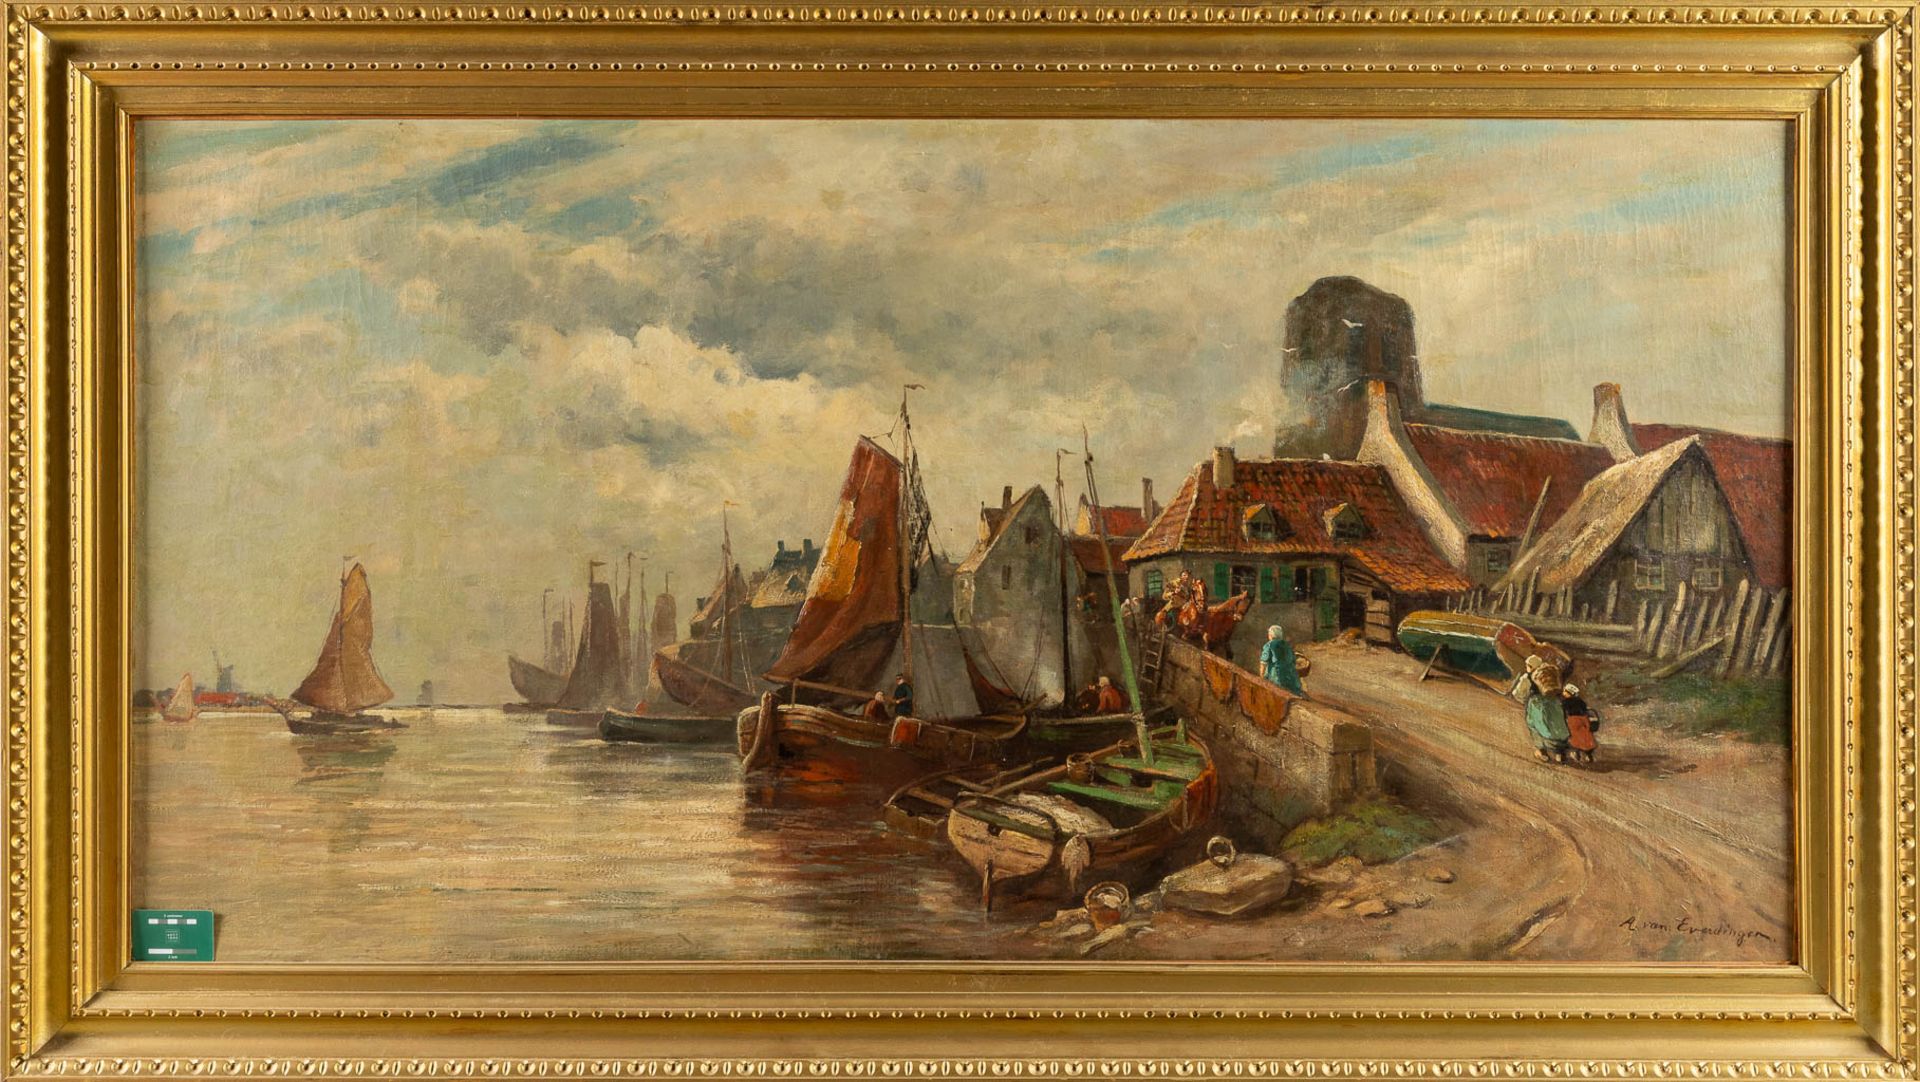 Adriaen VAN EVERDINGEN (1832-1912) 'Village near the river' oil on canvas. (W:171 x H:90 cm) - Image 2 of 8